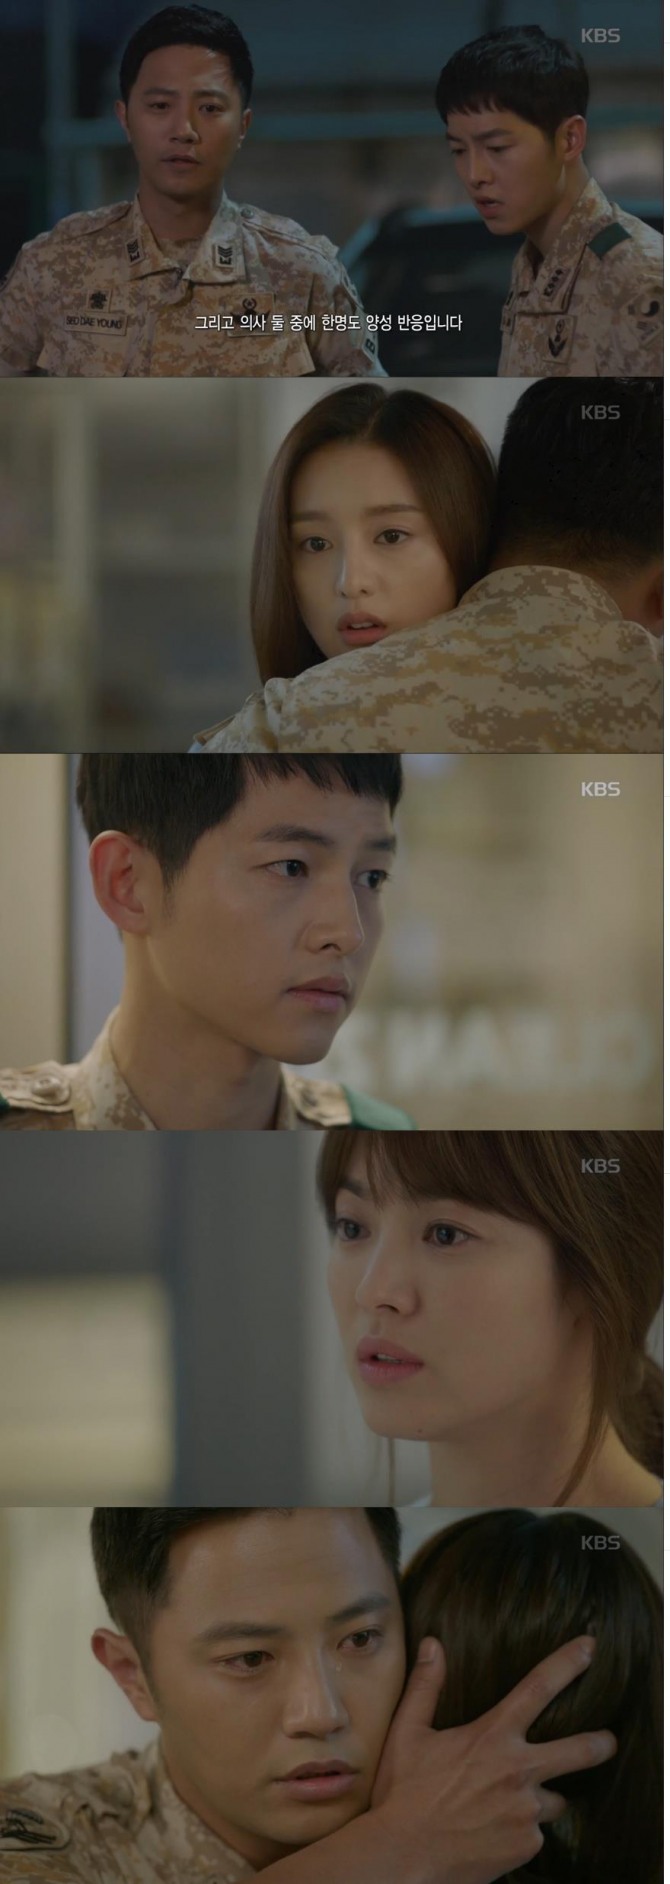 24일 방송된 KBS 수목드라마 '태양의 후예'에서 서대영(진구)은 윤명주(김지원)가 바이러스에 감염된 사실을 확인하고 눈물의 포옹을 해 애틋함을 더해주었다./사진=KBS2 방송 캡처